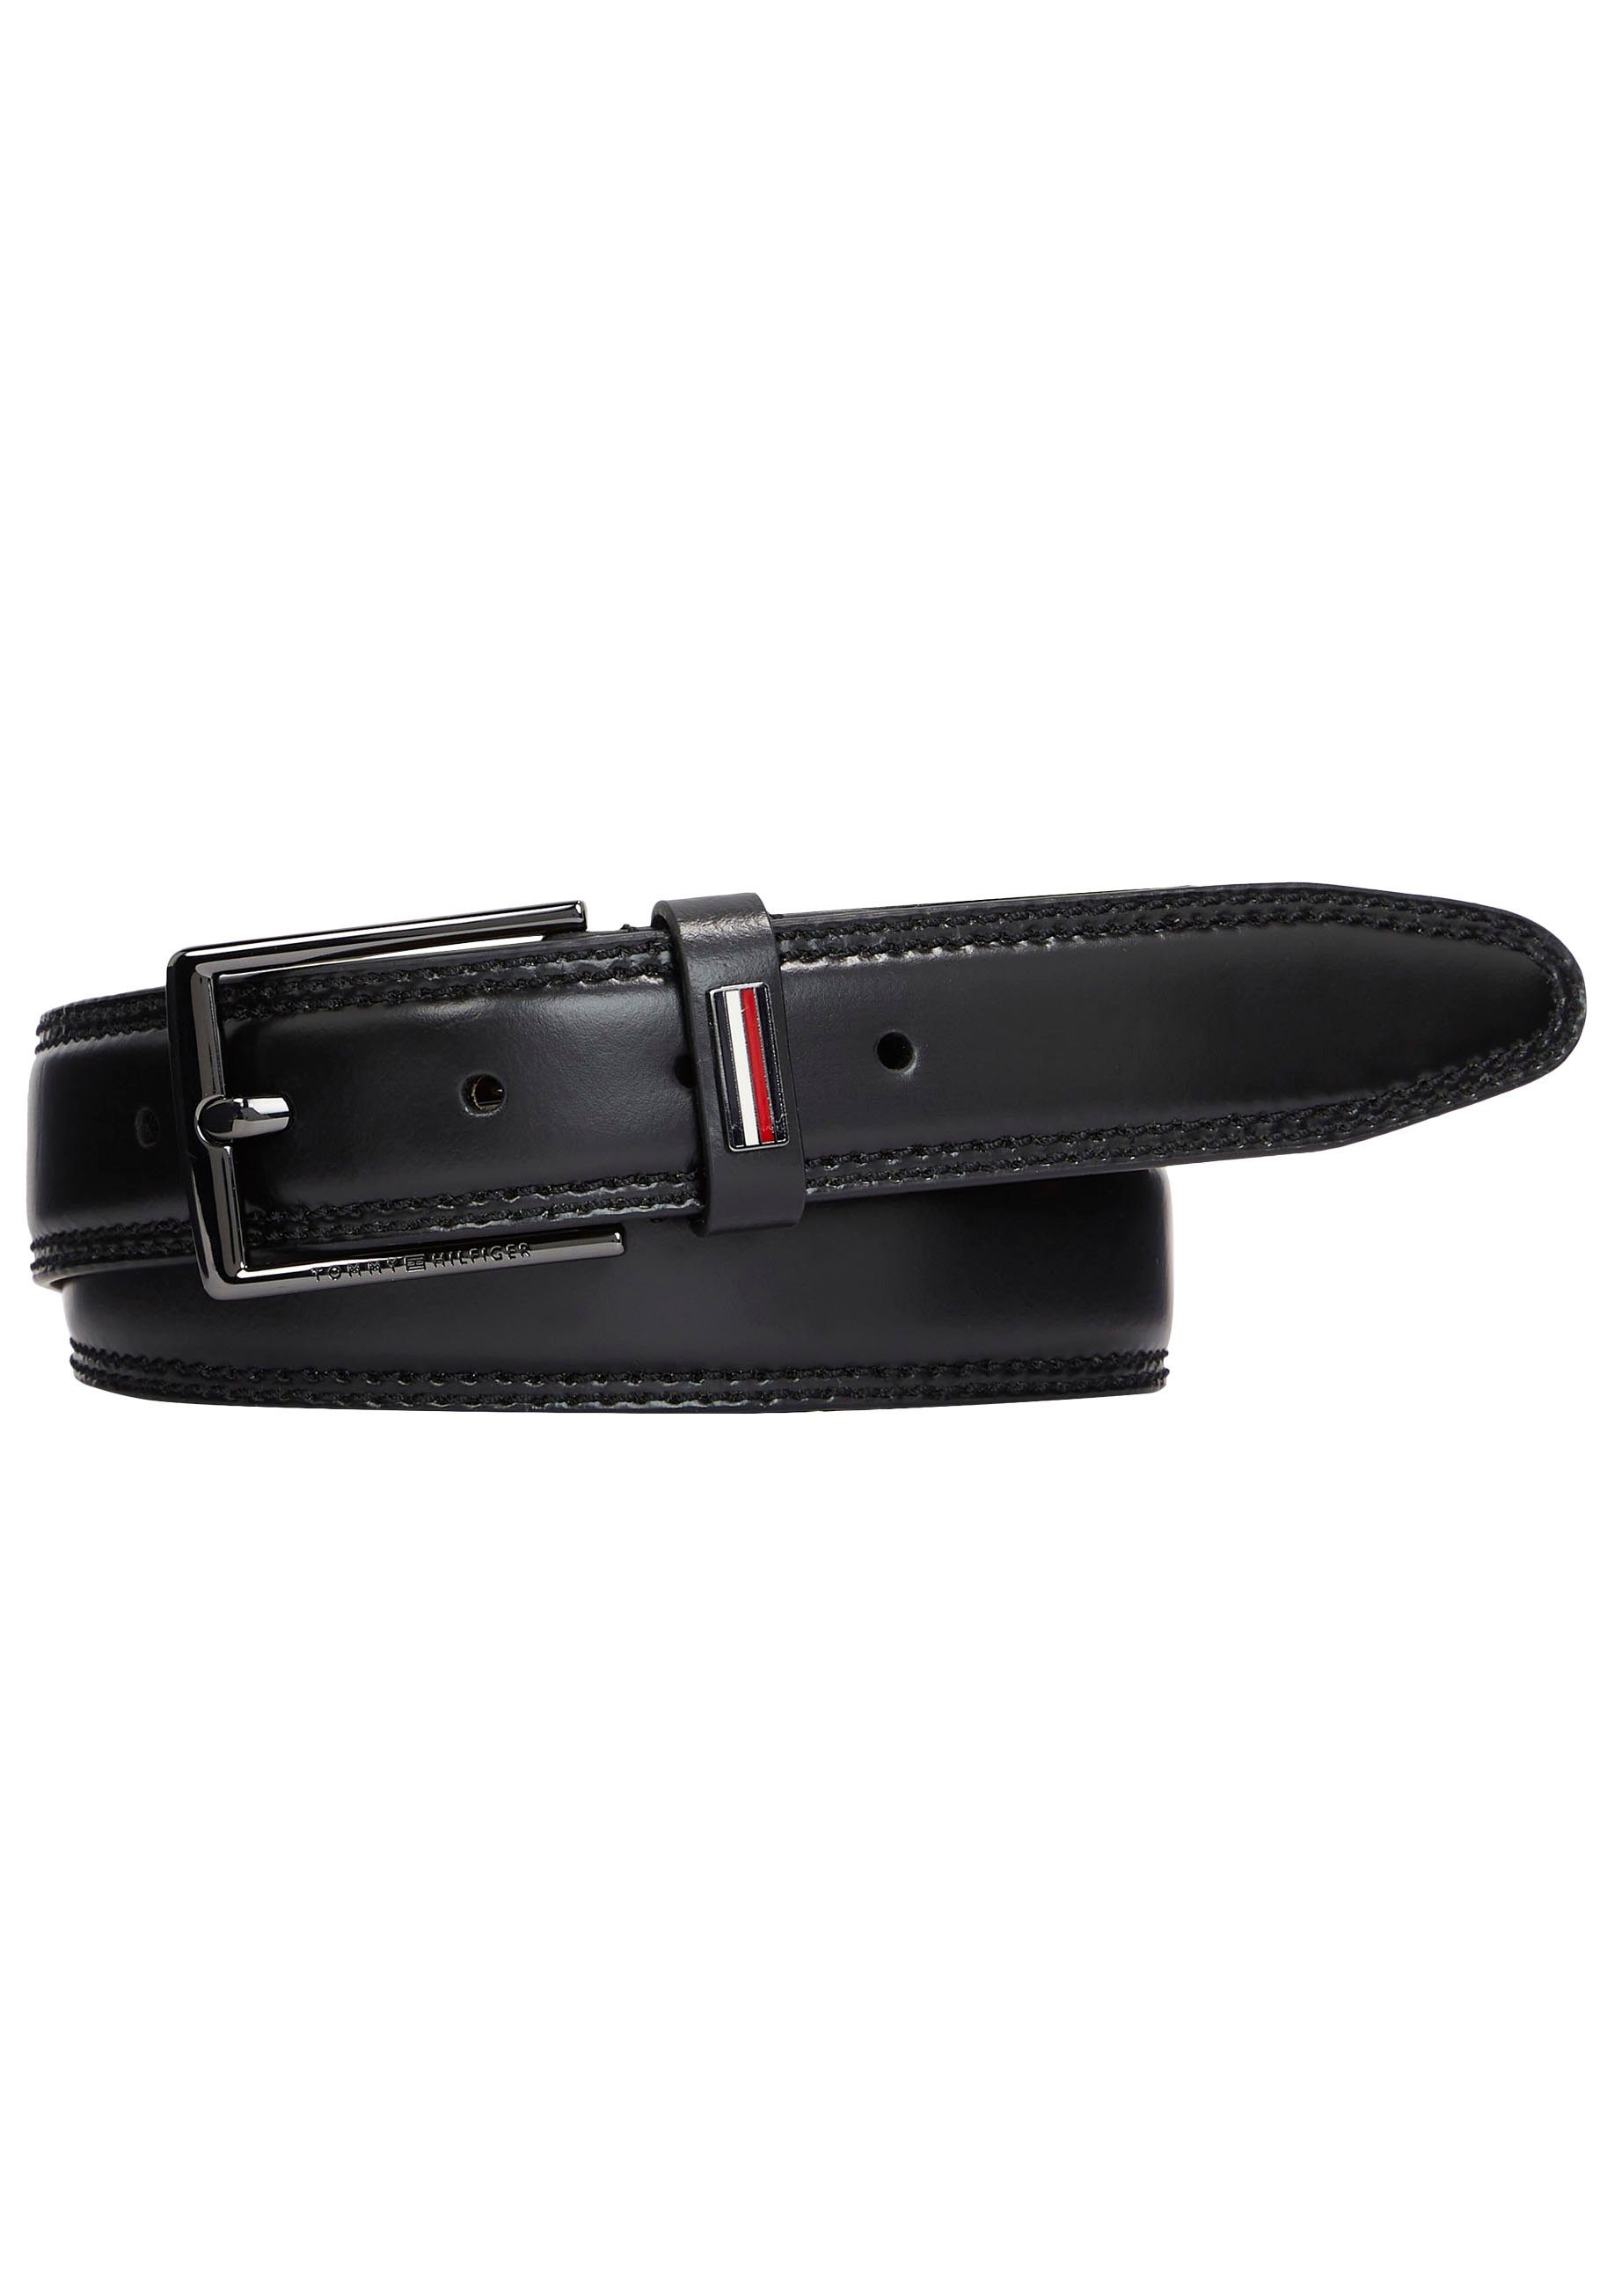 Tommy Hilfiger Ledergürtel BUSINESS Black mit Ziernähten 3.5 eleganten